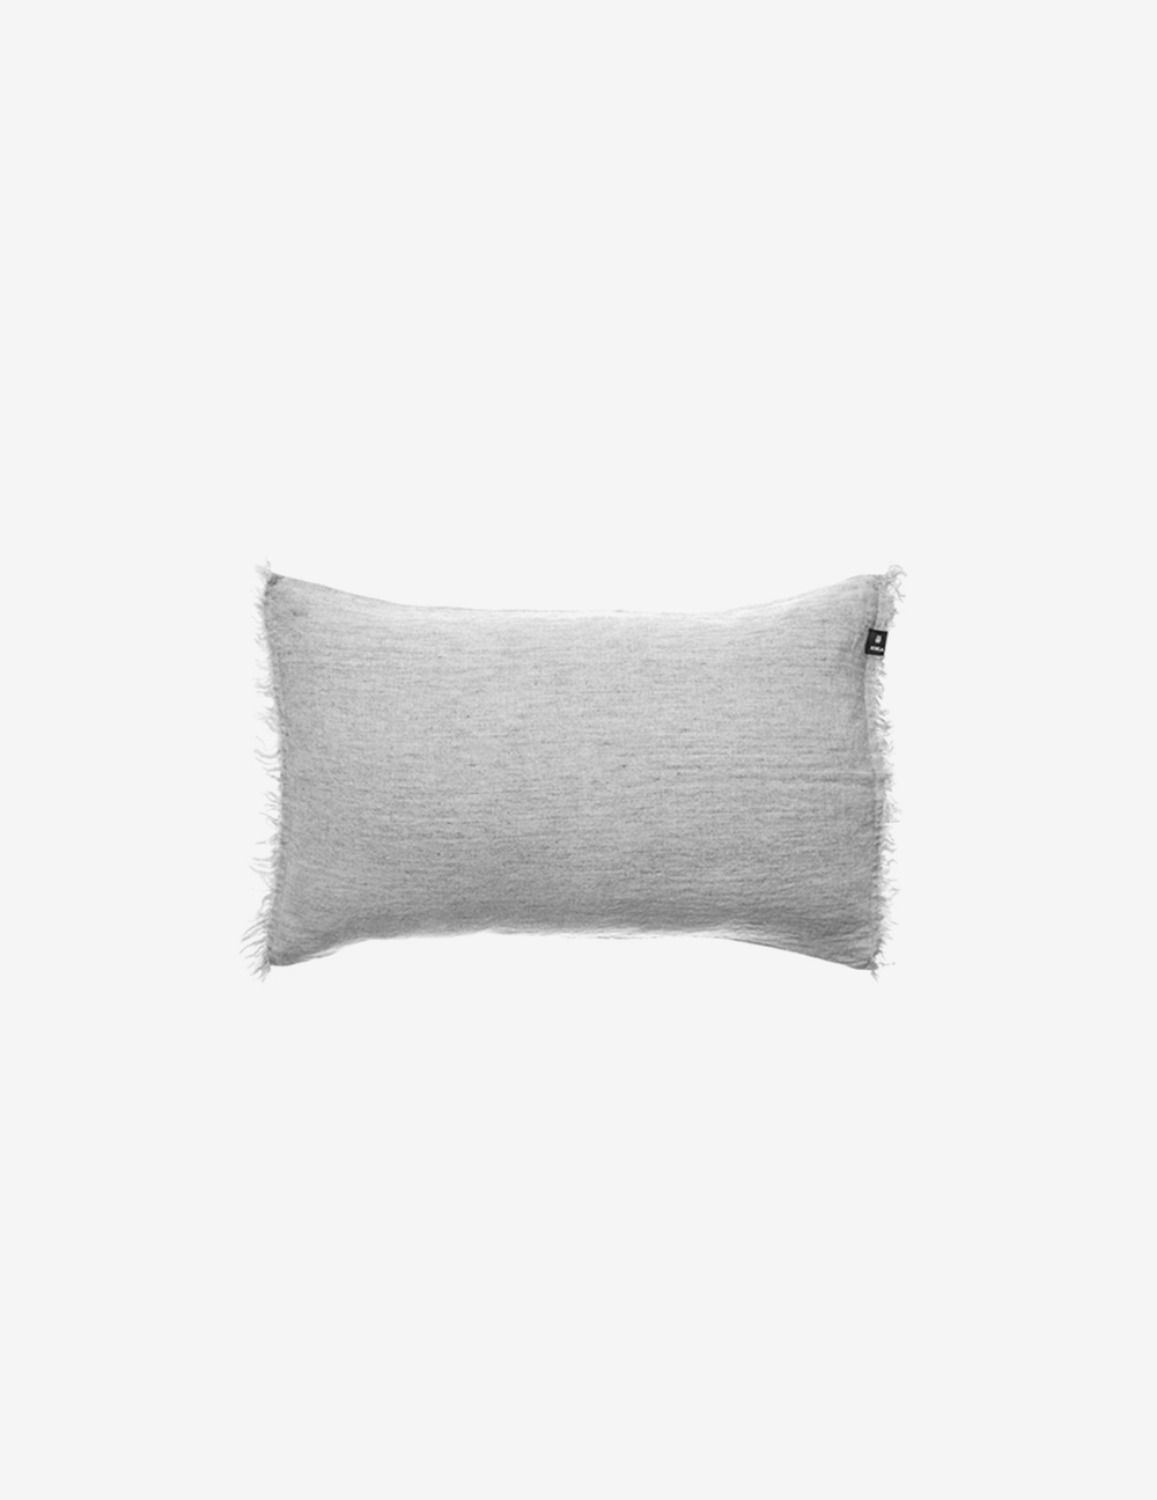 [HIMLA] Levelin Cushion / Silver (60x40)